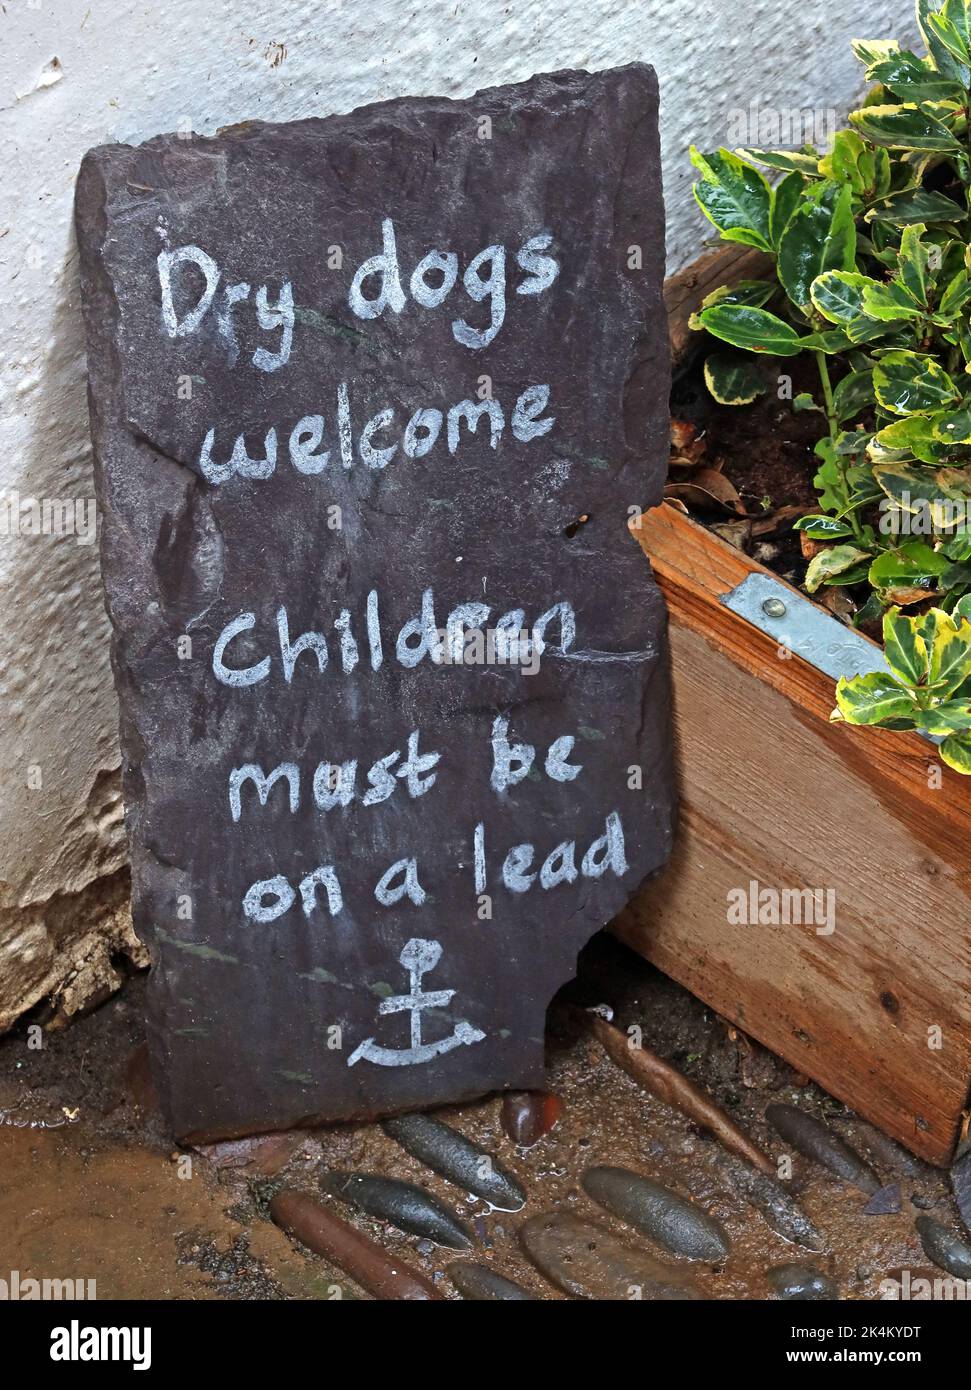 Panneau ardoise, Dry Dogs Welcome, les enfants doivent être en laisse, à Robin Hoods Bay, côte nord du Yorkshire, Angleterre, Royaume-Uni Banque D'Images